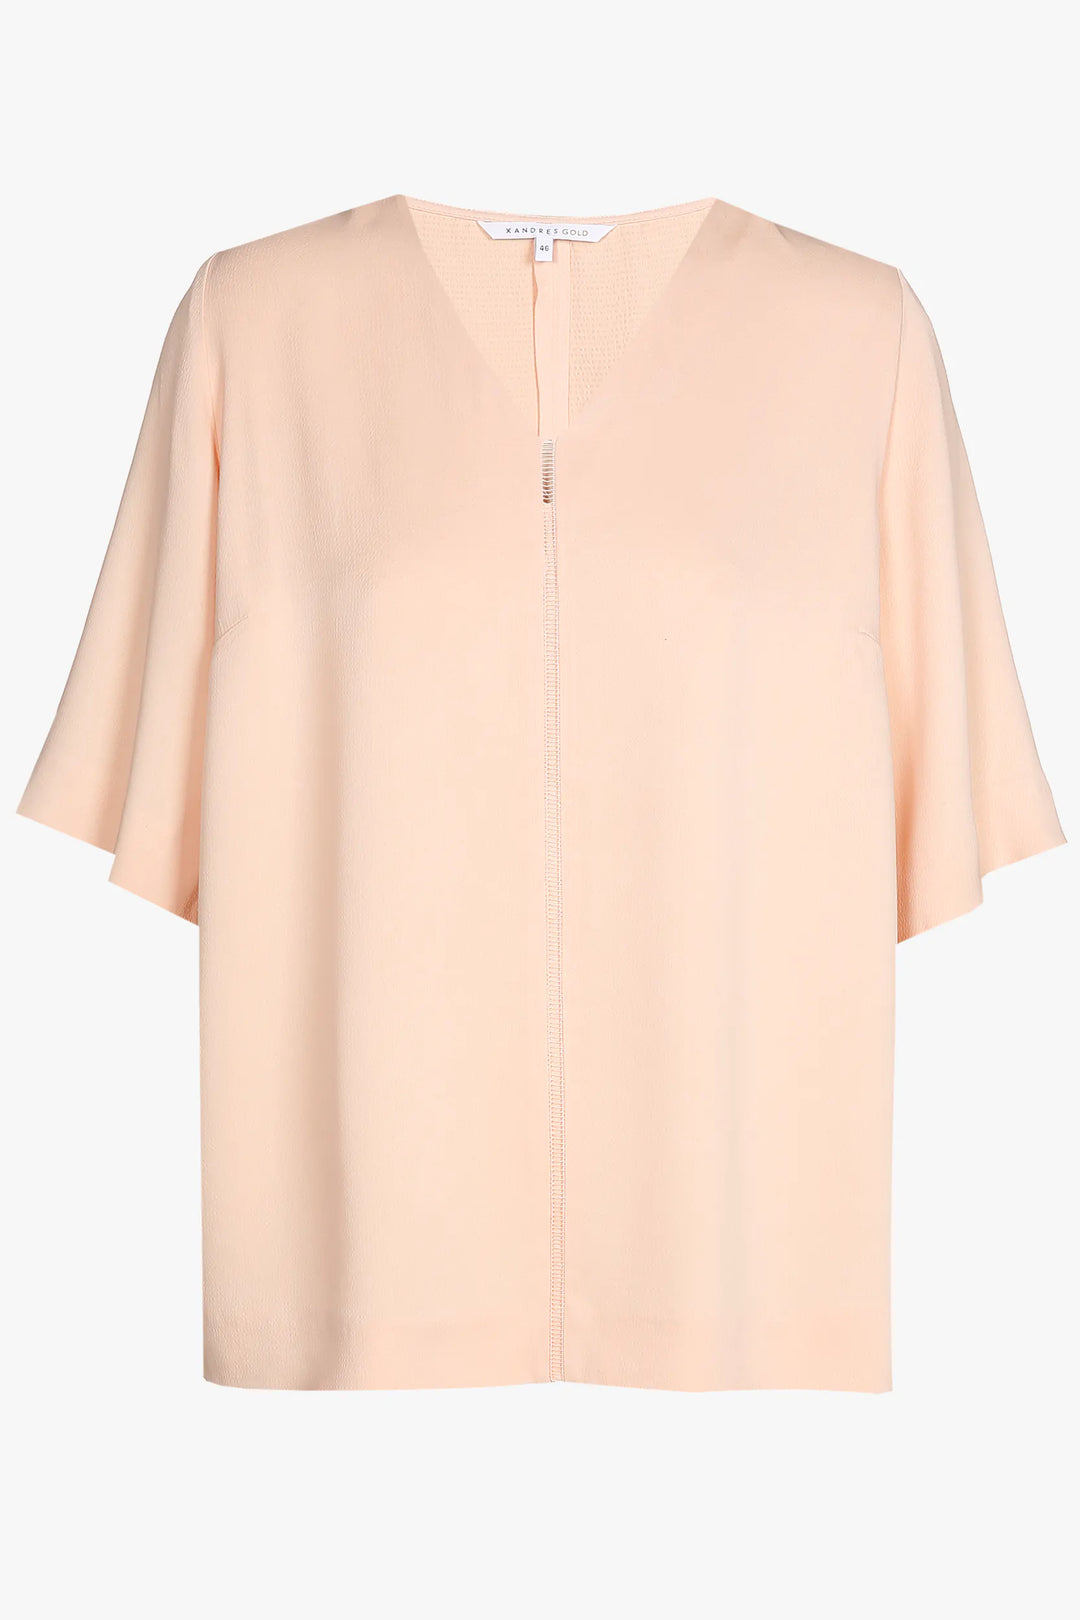 pastelroze blouse - xandres - housnia - grote maten - dameskleding - kledingwinkel - herent - leuven